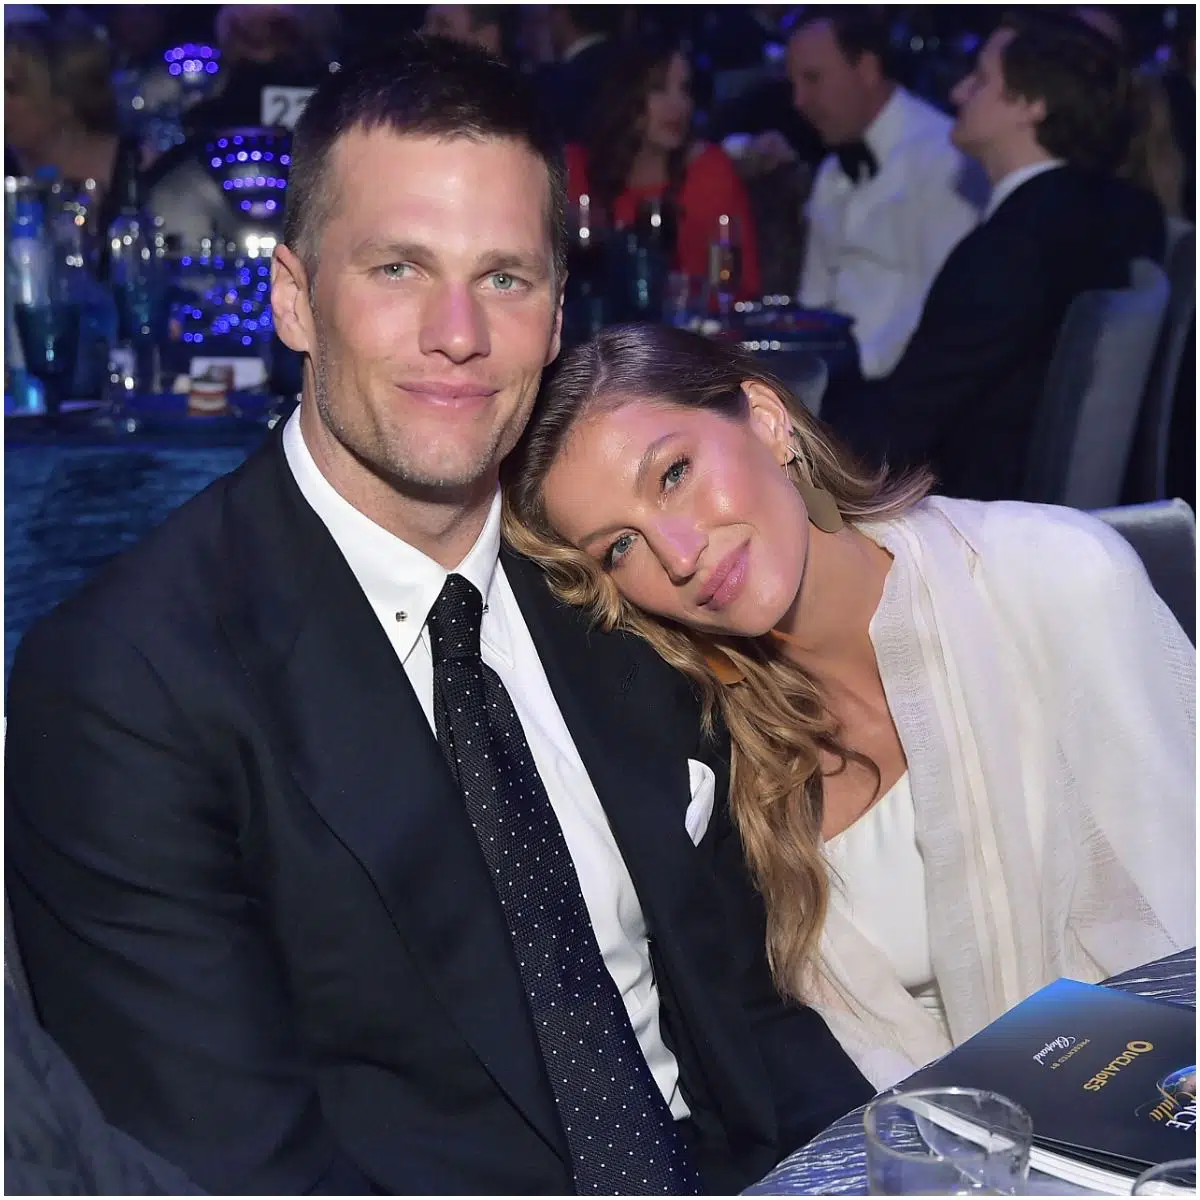 Tom Brady and wife Gisele Bundchen